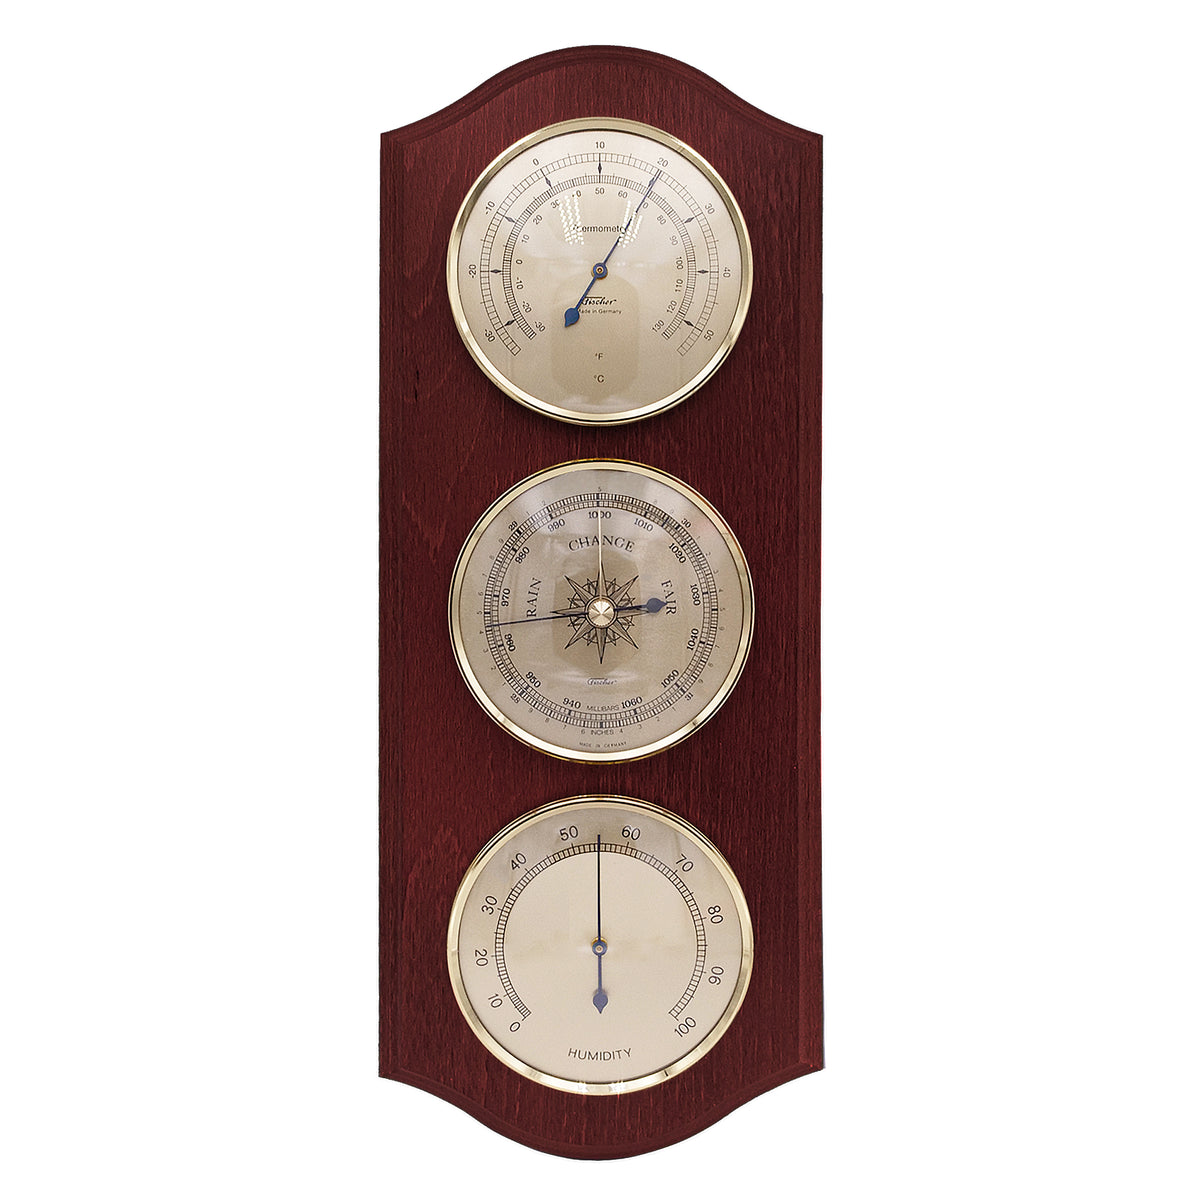 Vriendelijkheid Regeringsverordening Rijk Fischer Weather Station Thermometer, Barometer & Hygrometer 9178 US —  Loewen META trading GmbH